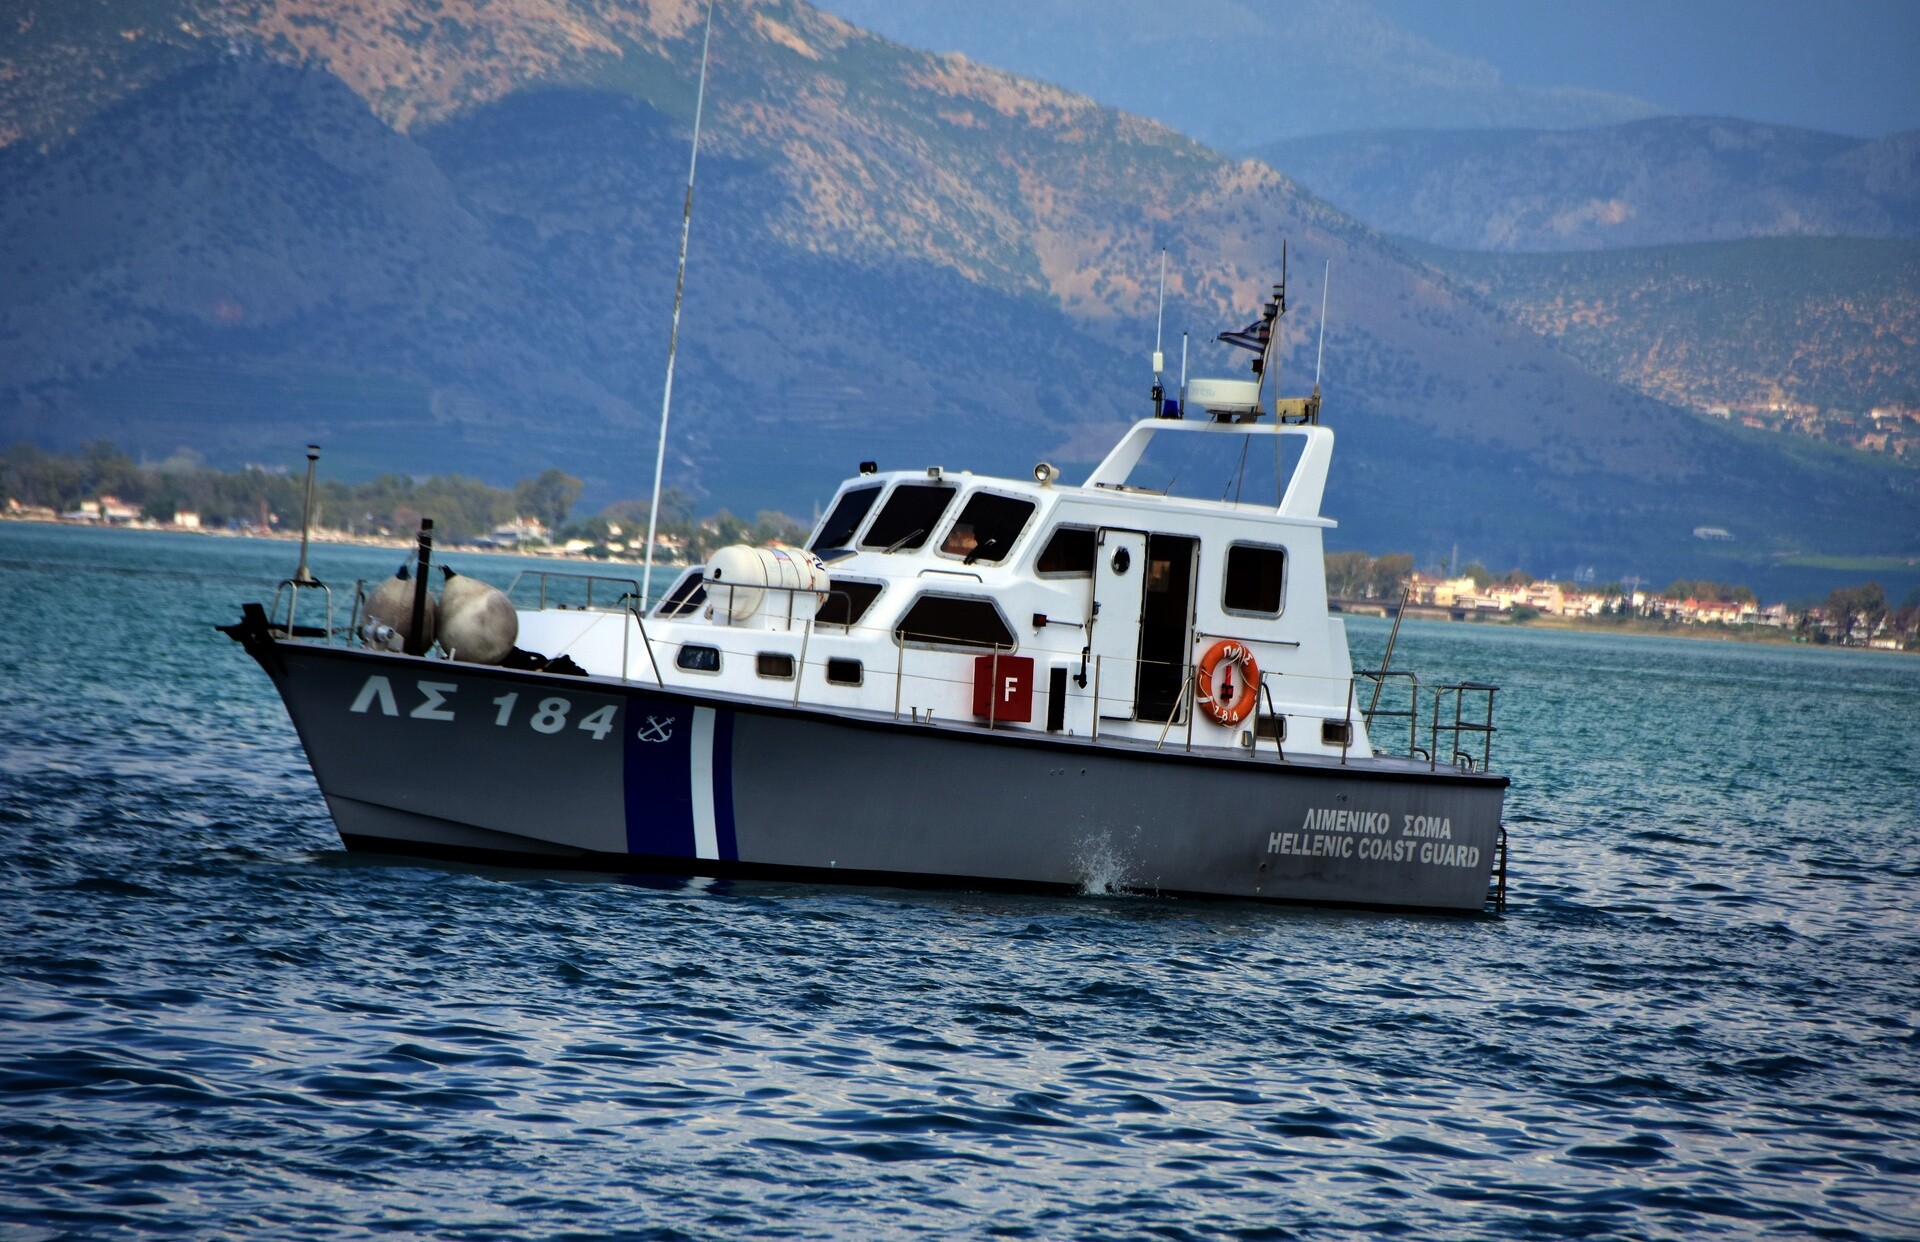 Σάμος: Καρέ - καρέ η καταδίωξη του Λιμενικού σε σκάφος αλλοδαπών διακινητών